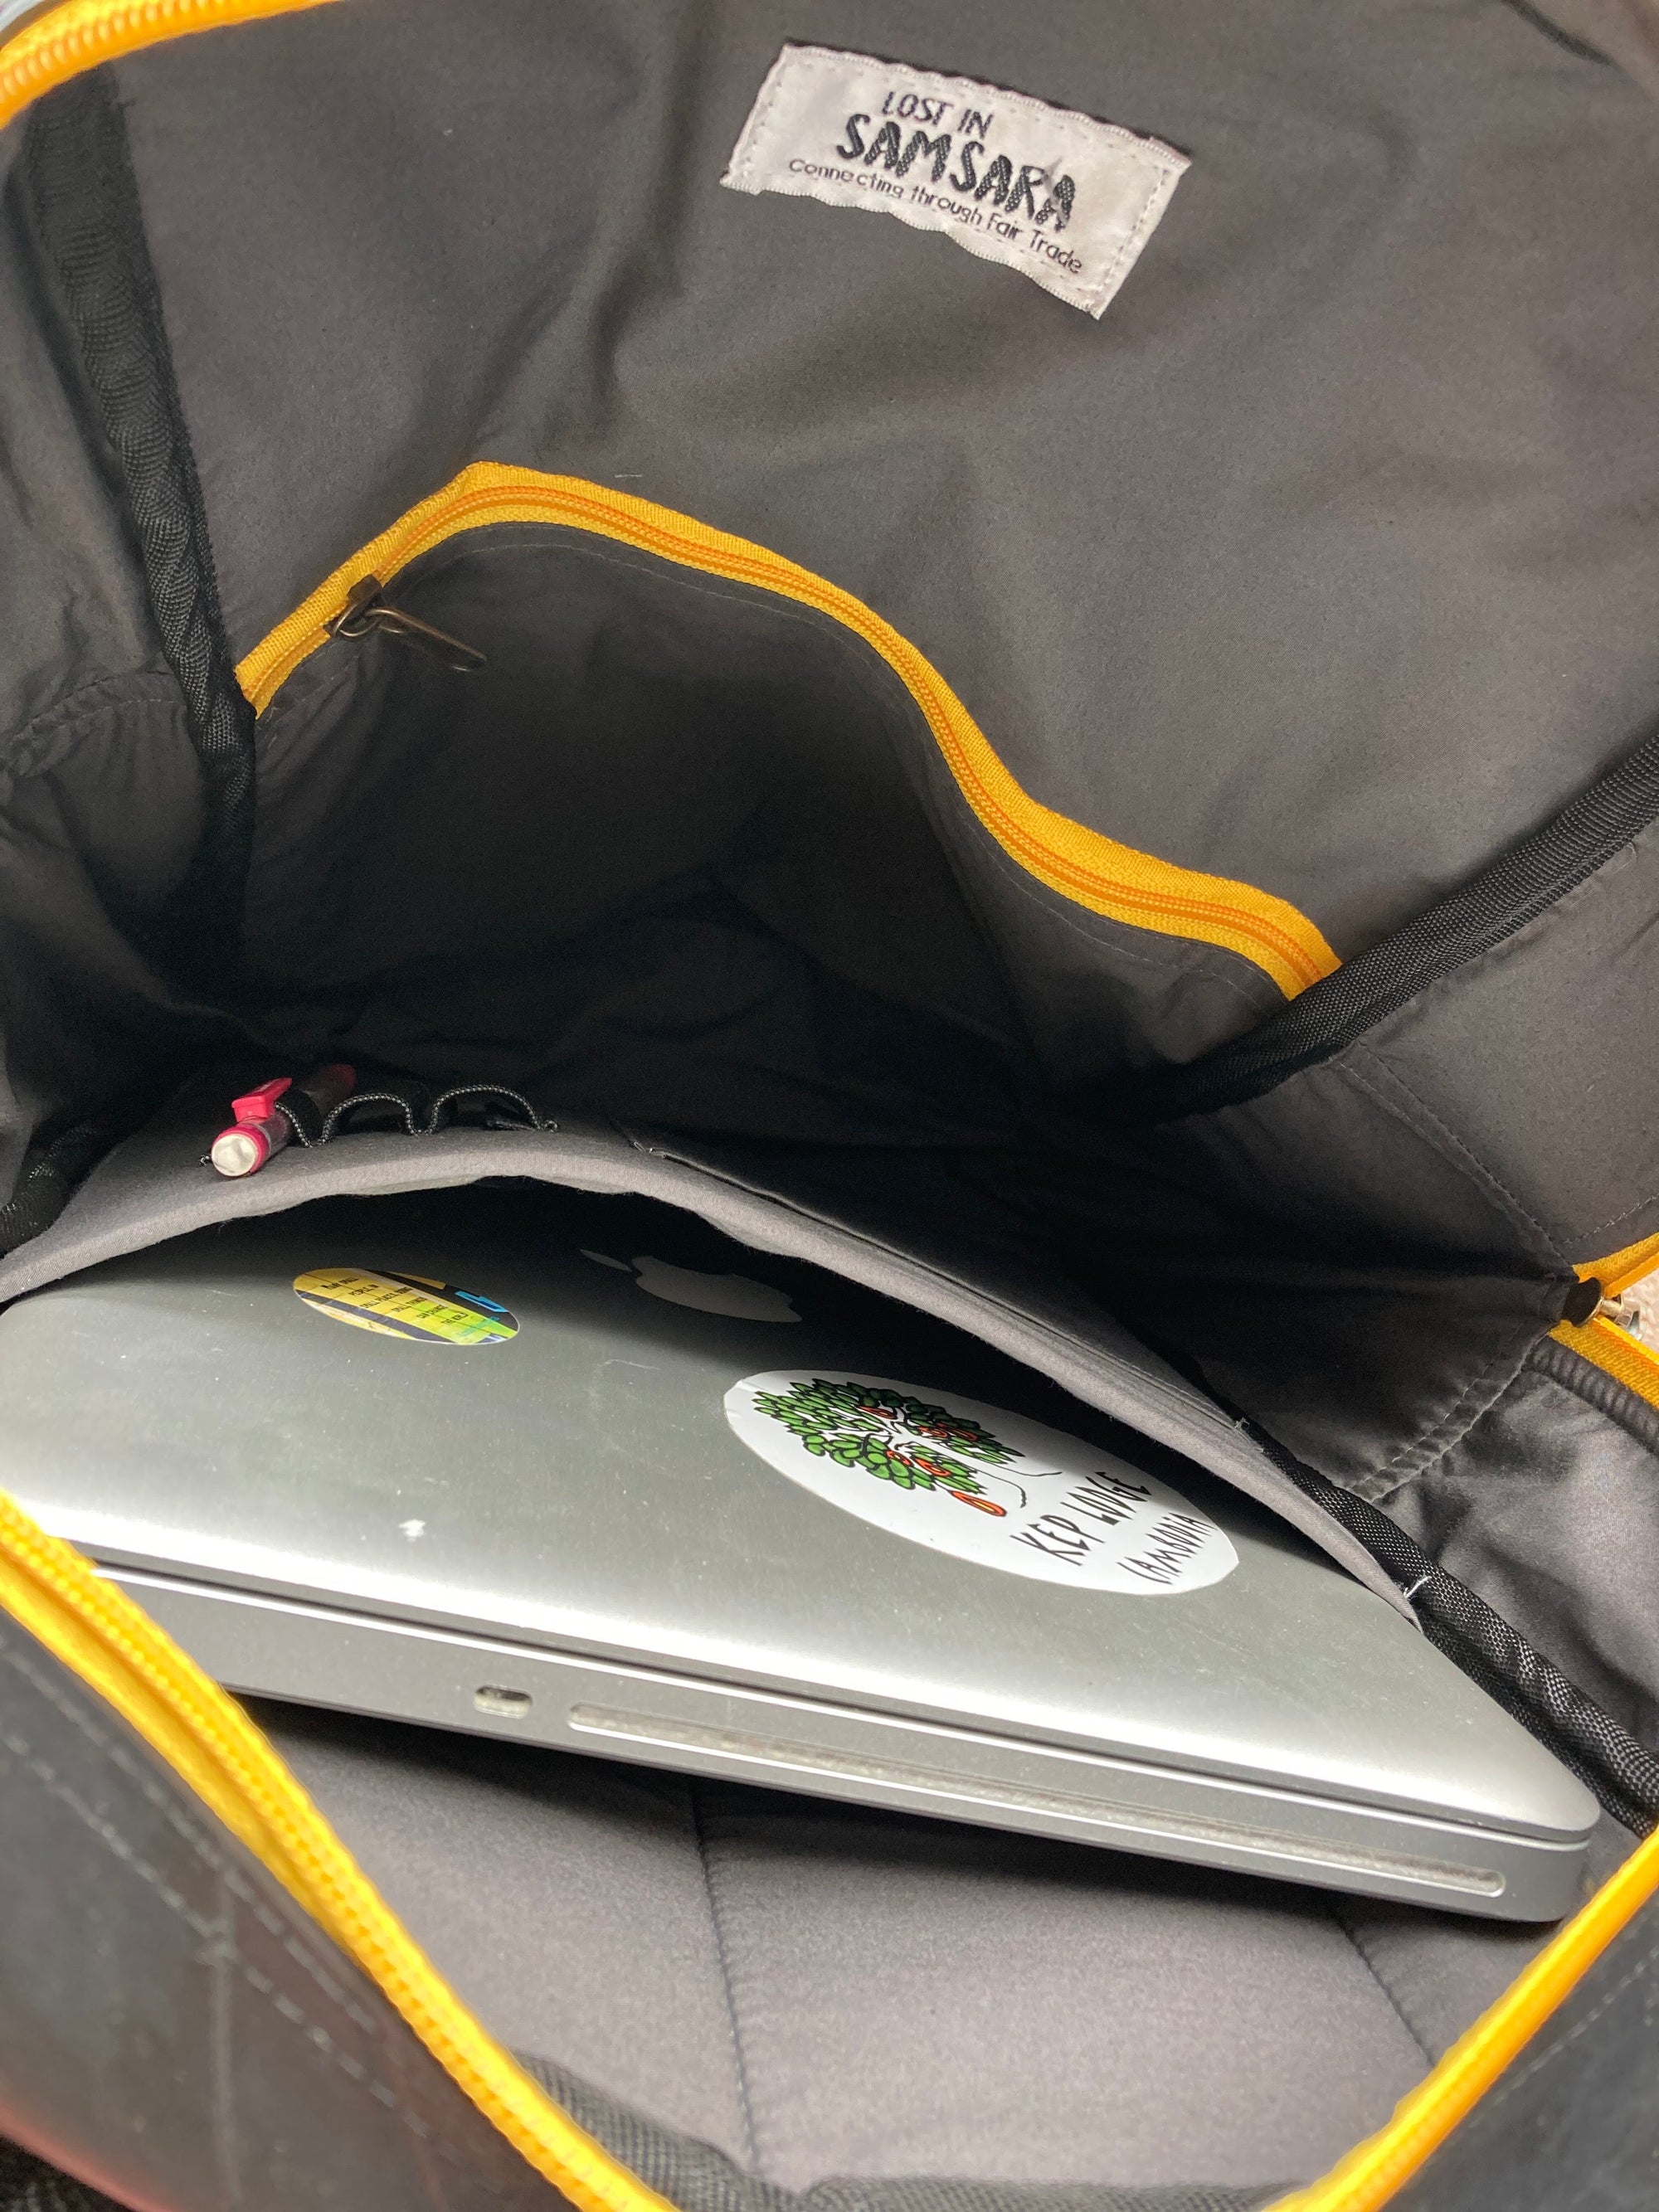 Upcycled inner tube Hackney Backpack - WASTE NOT